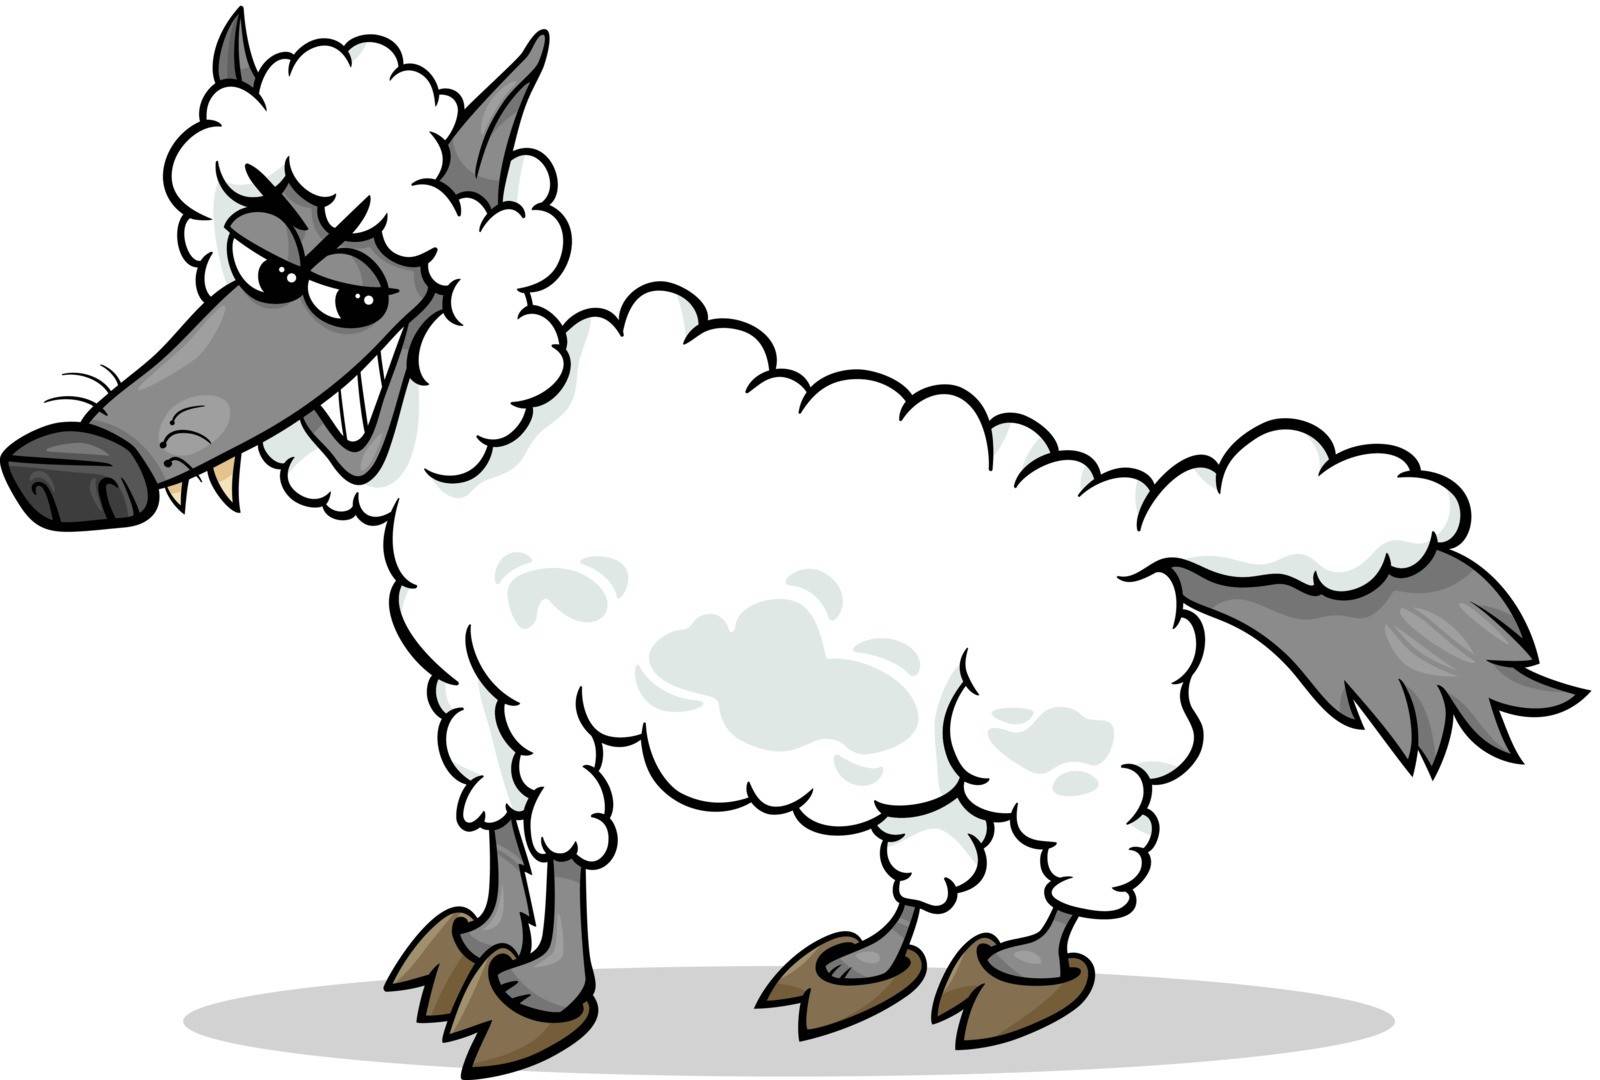 wolf in sheeps clothing cartoon by izakowski